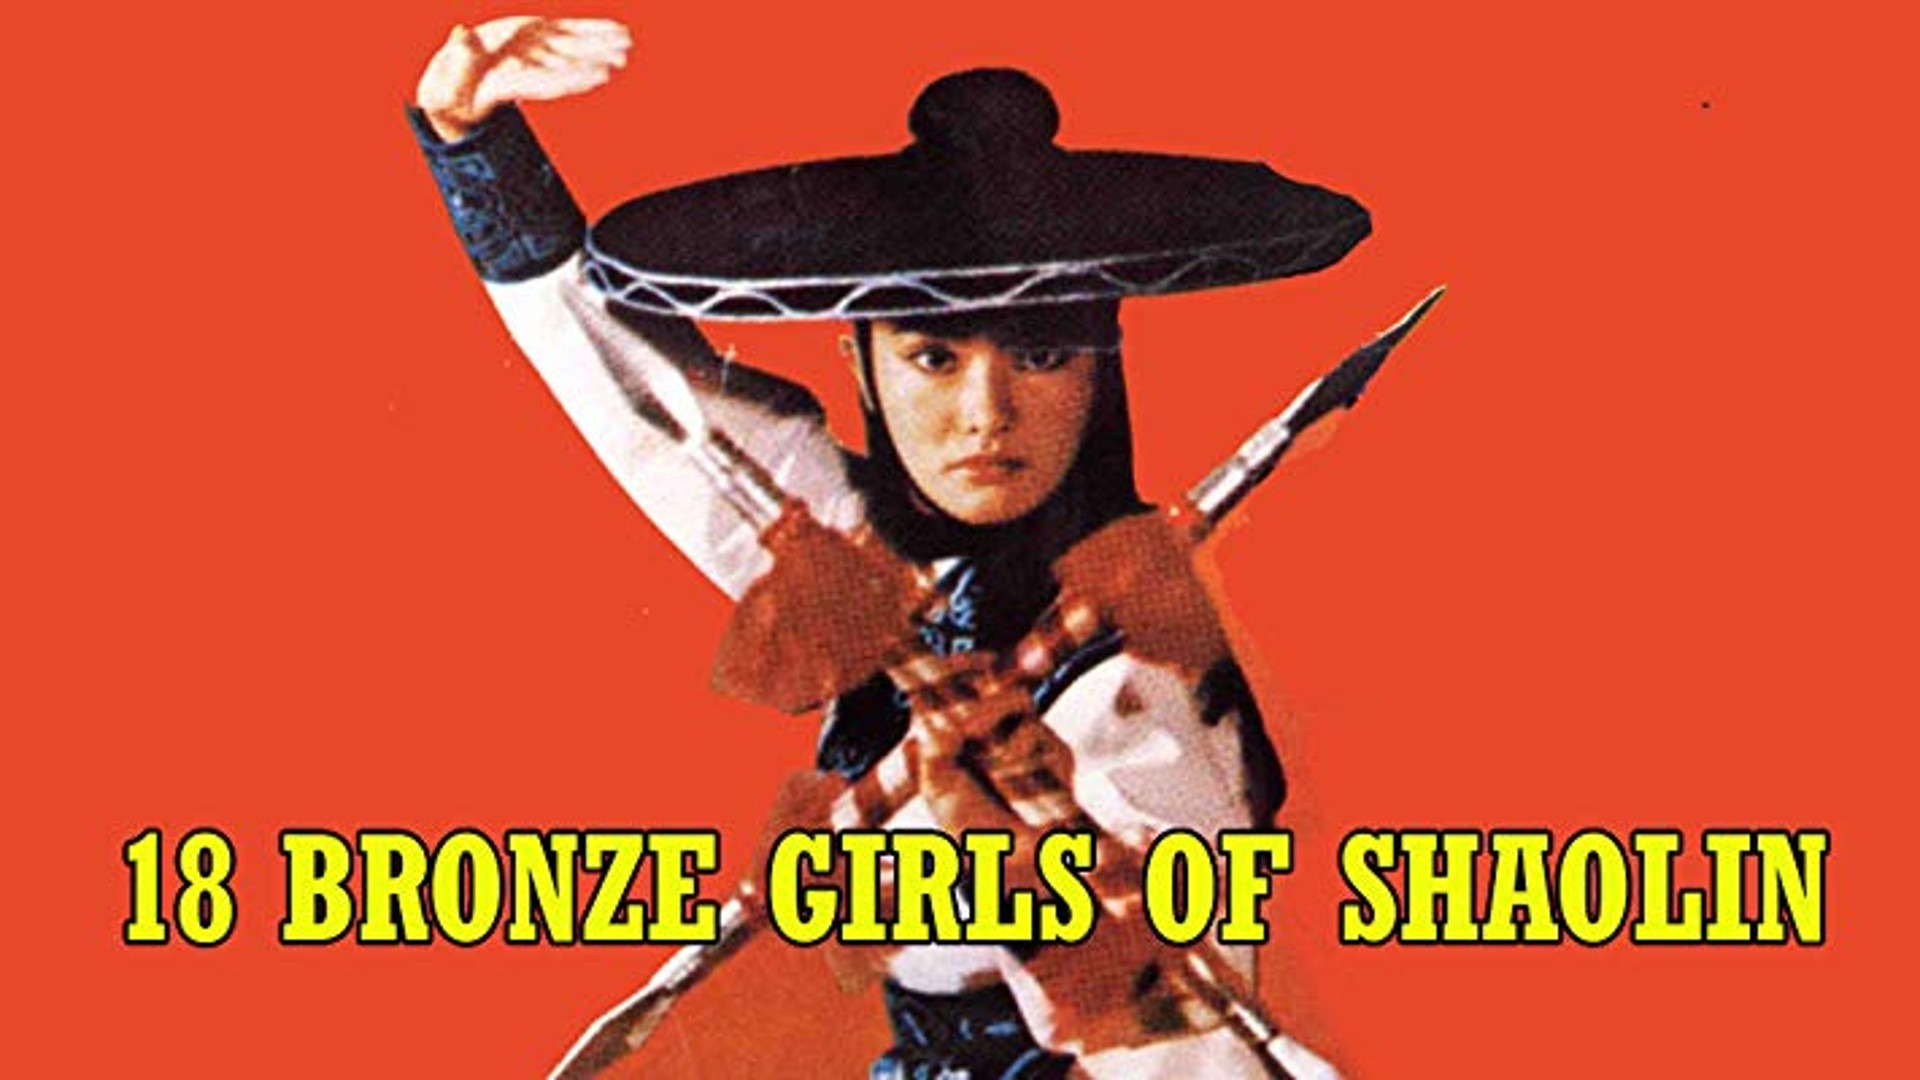 Les 18 filles de bronze de Shaolin 1983 drive in movie channel